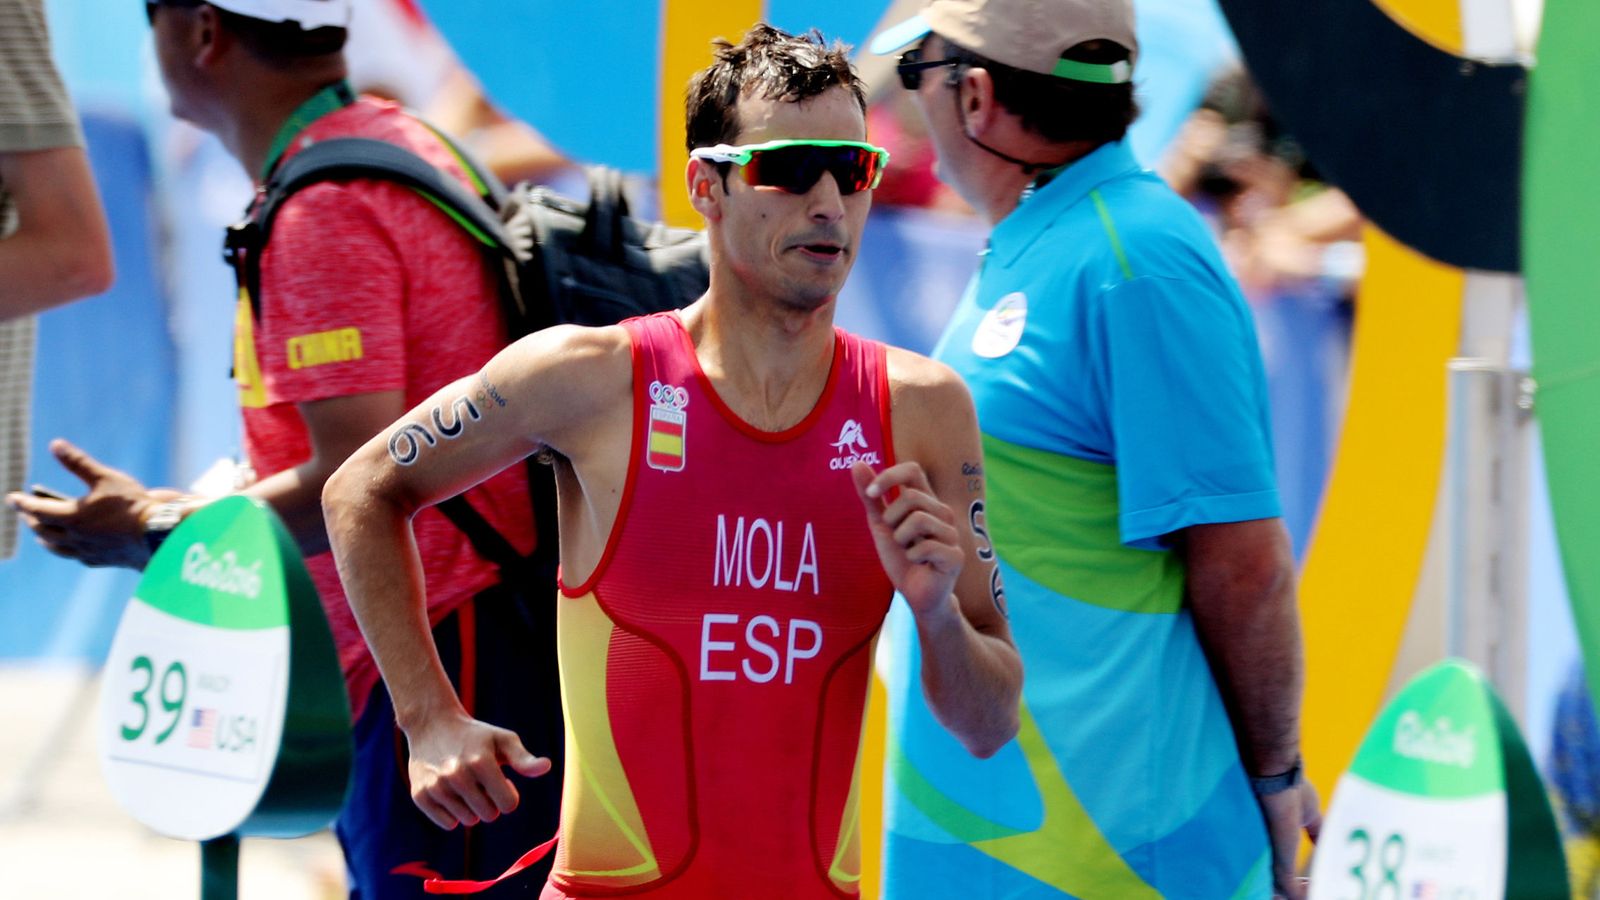 Foto: El atleta español Mario Mola durante la disputa del triatlón de los Juegos Olímpicos de Río (EFE)